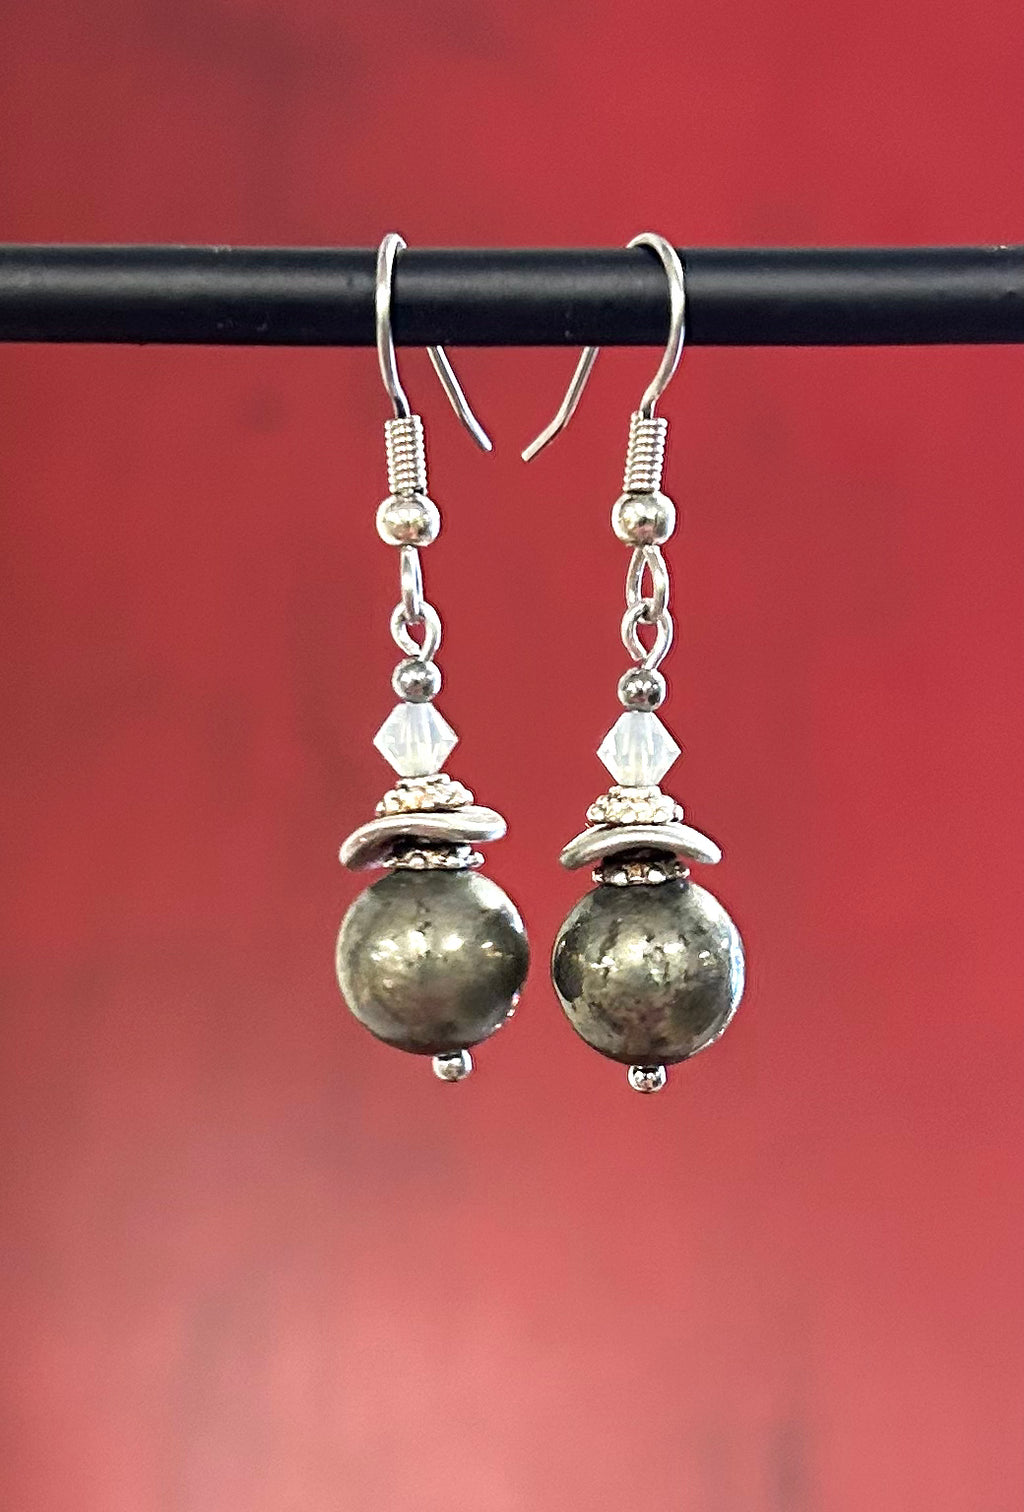 Iron Pyrite Earrings - Lighten Up Shop